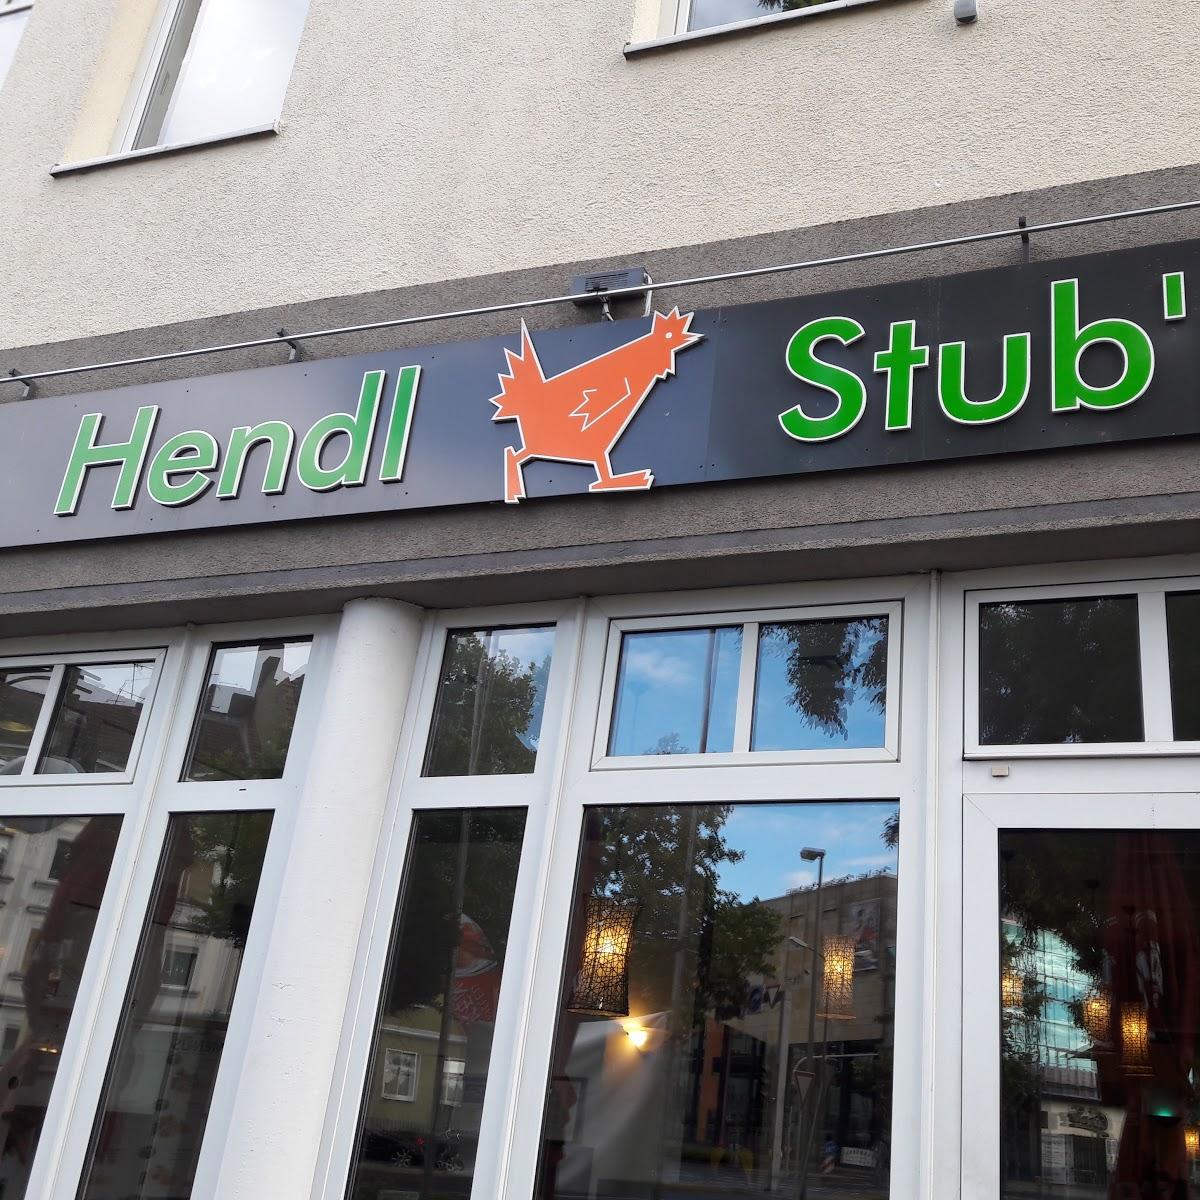 Restaurant "Restaurant Hendl Stubn" in  Fulda